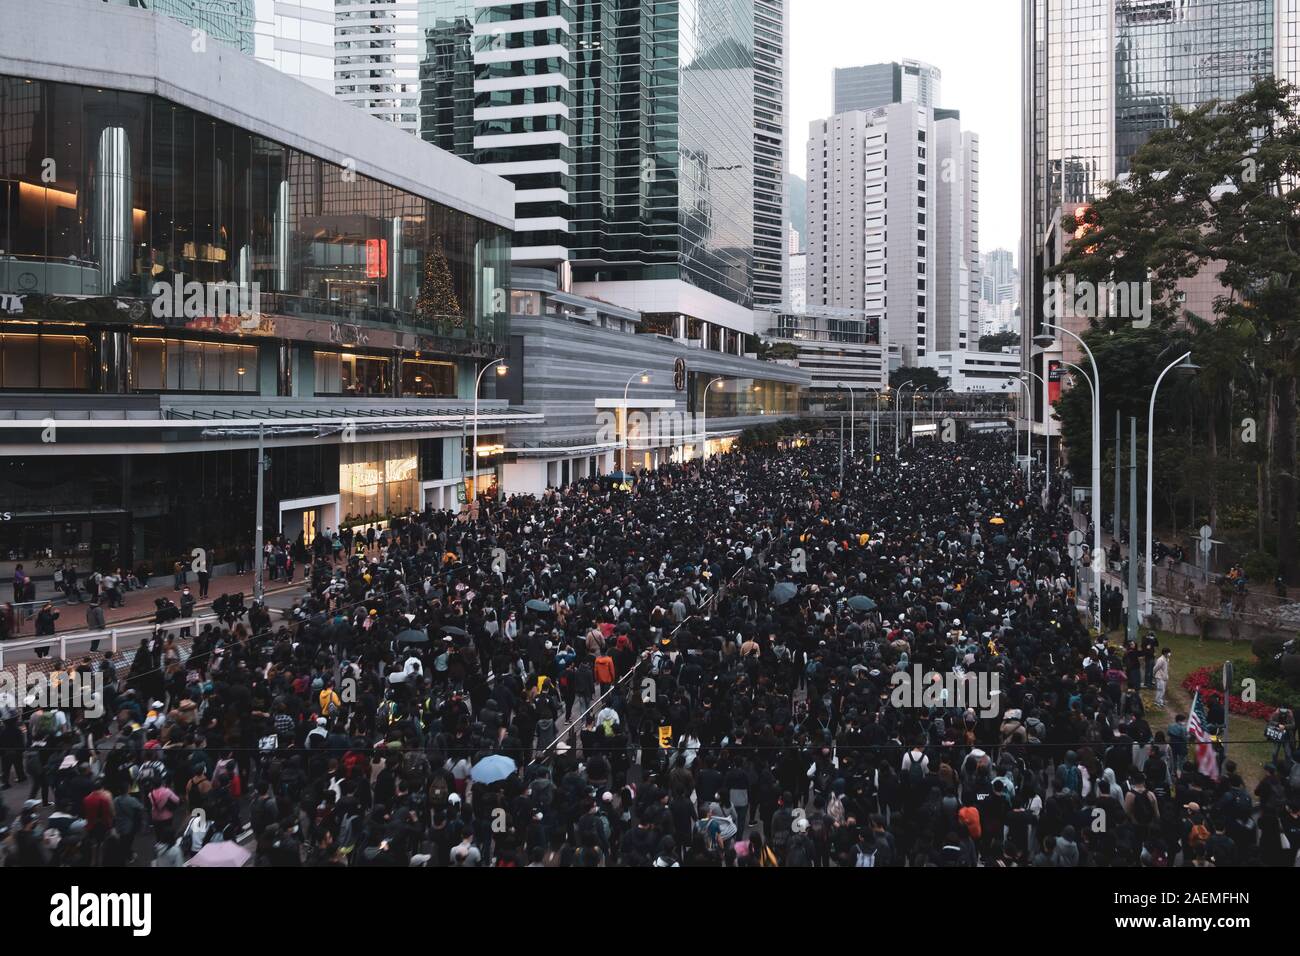 Hongkong - Dezember 8, 2019: Über eine Million besuchen Hong Kong Demo gegen umstrittenes Auslieferungsrecht. Demonstration in Hongkong. Stockfoto